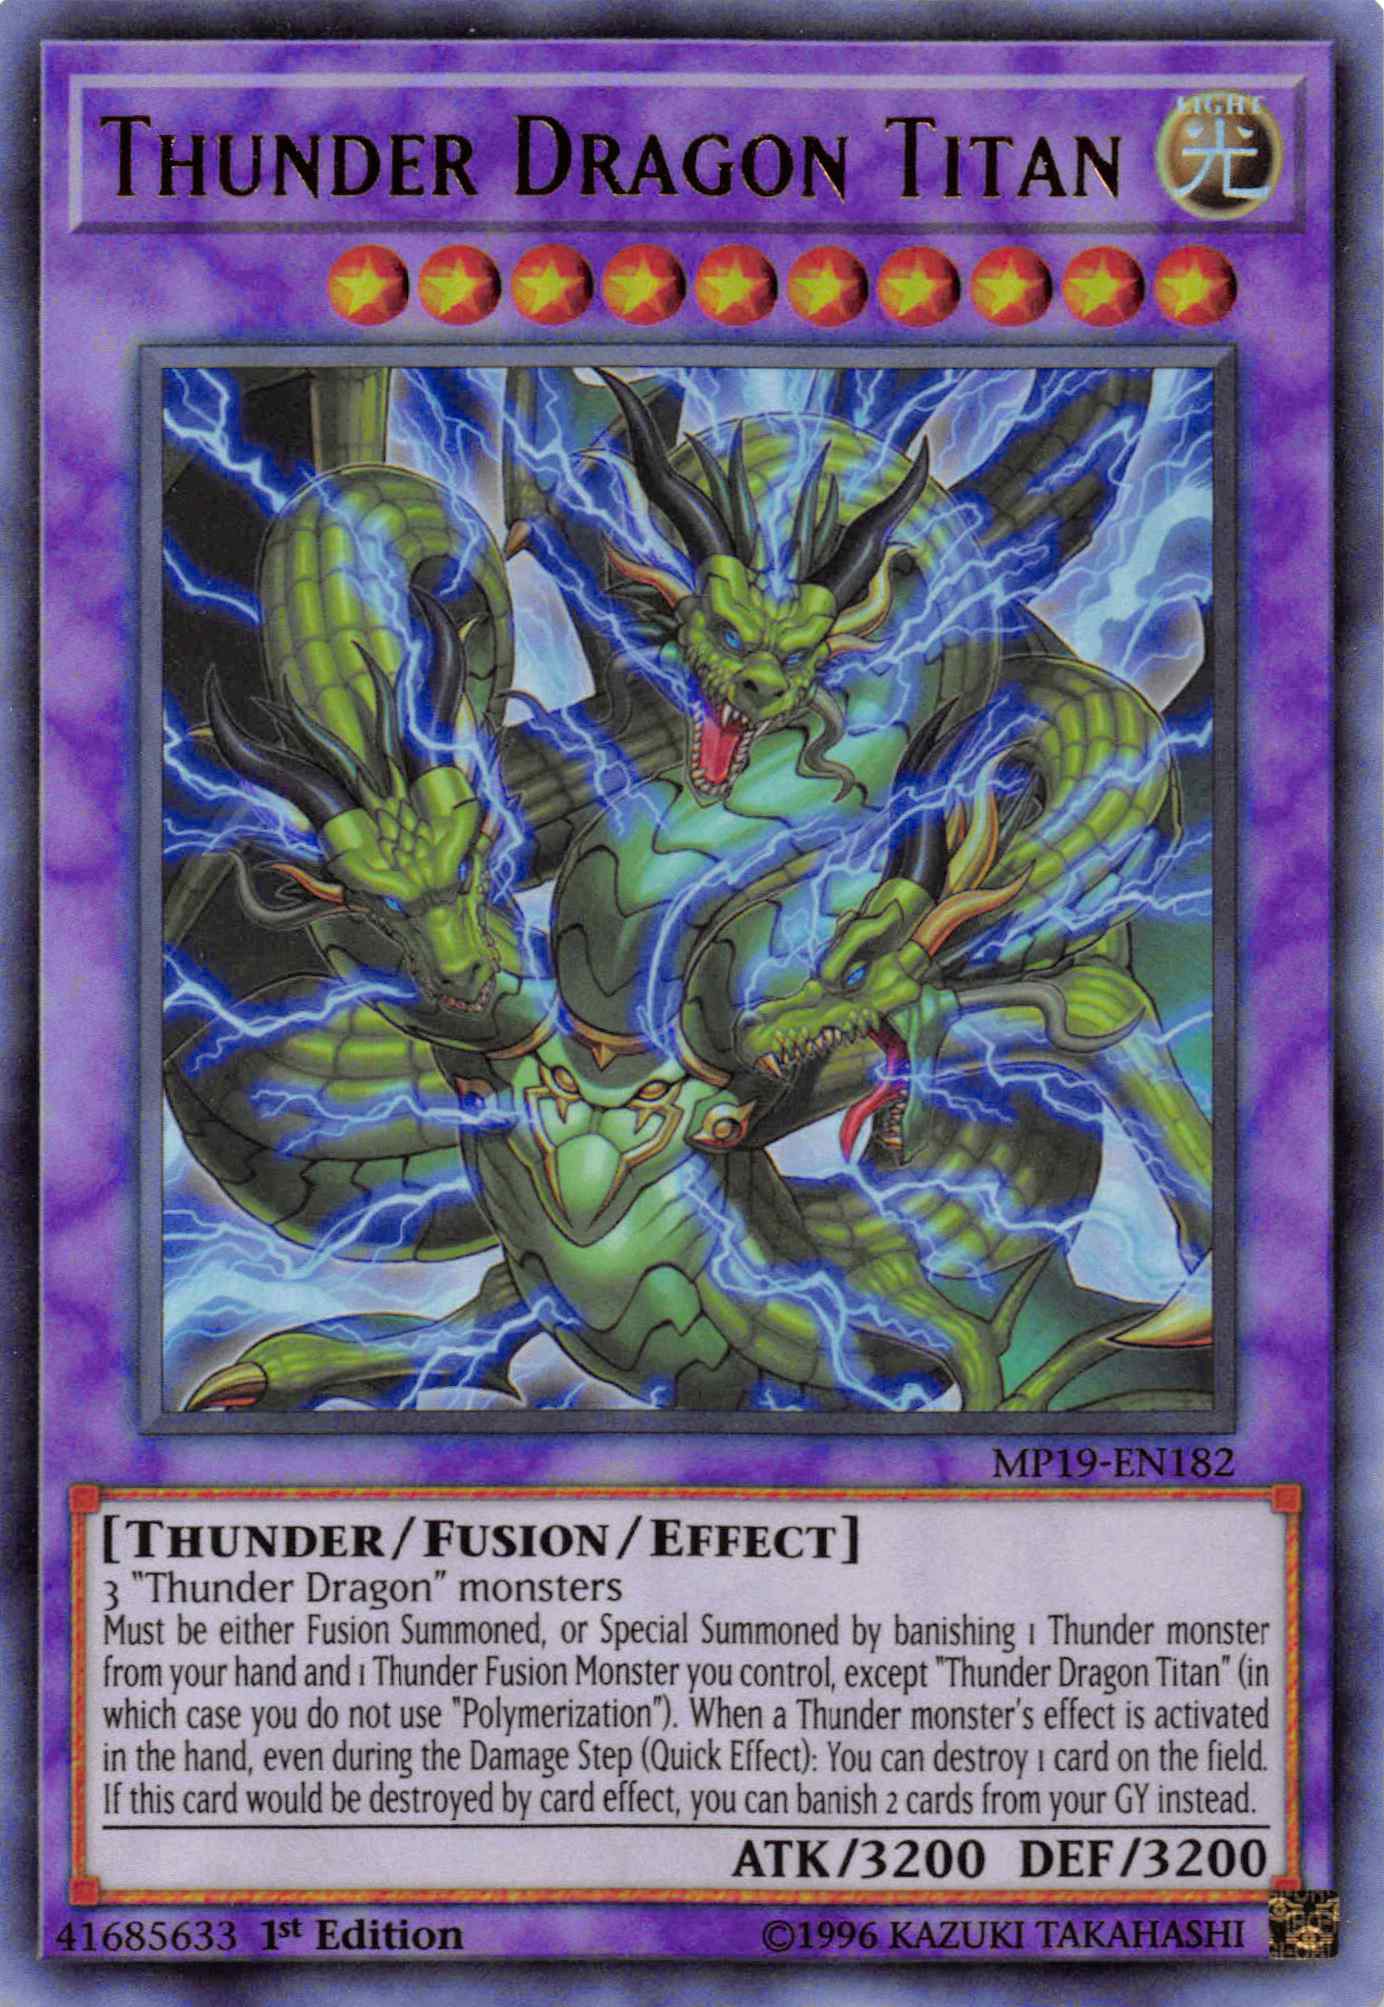 Thunder Dragon Titan [MP19-EN182] Ultra Rare